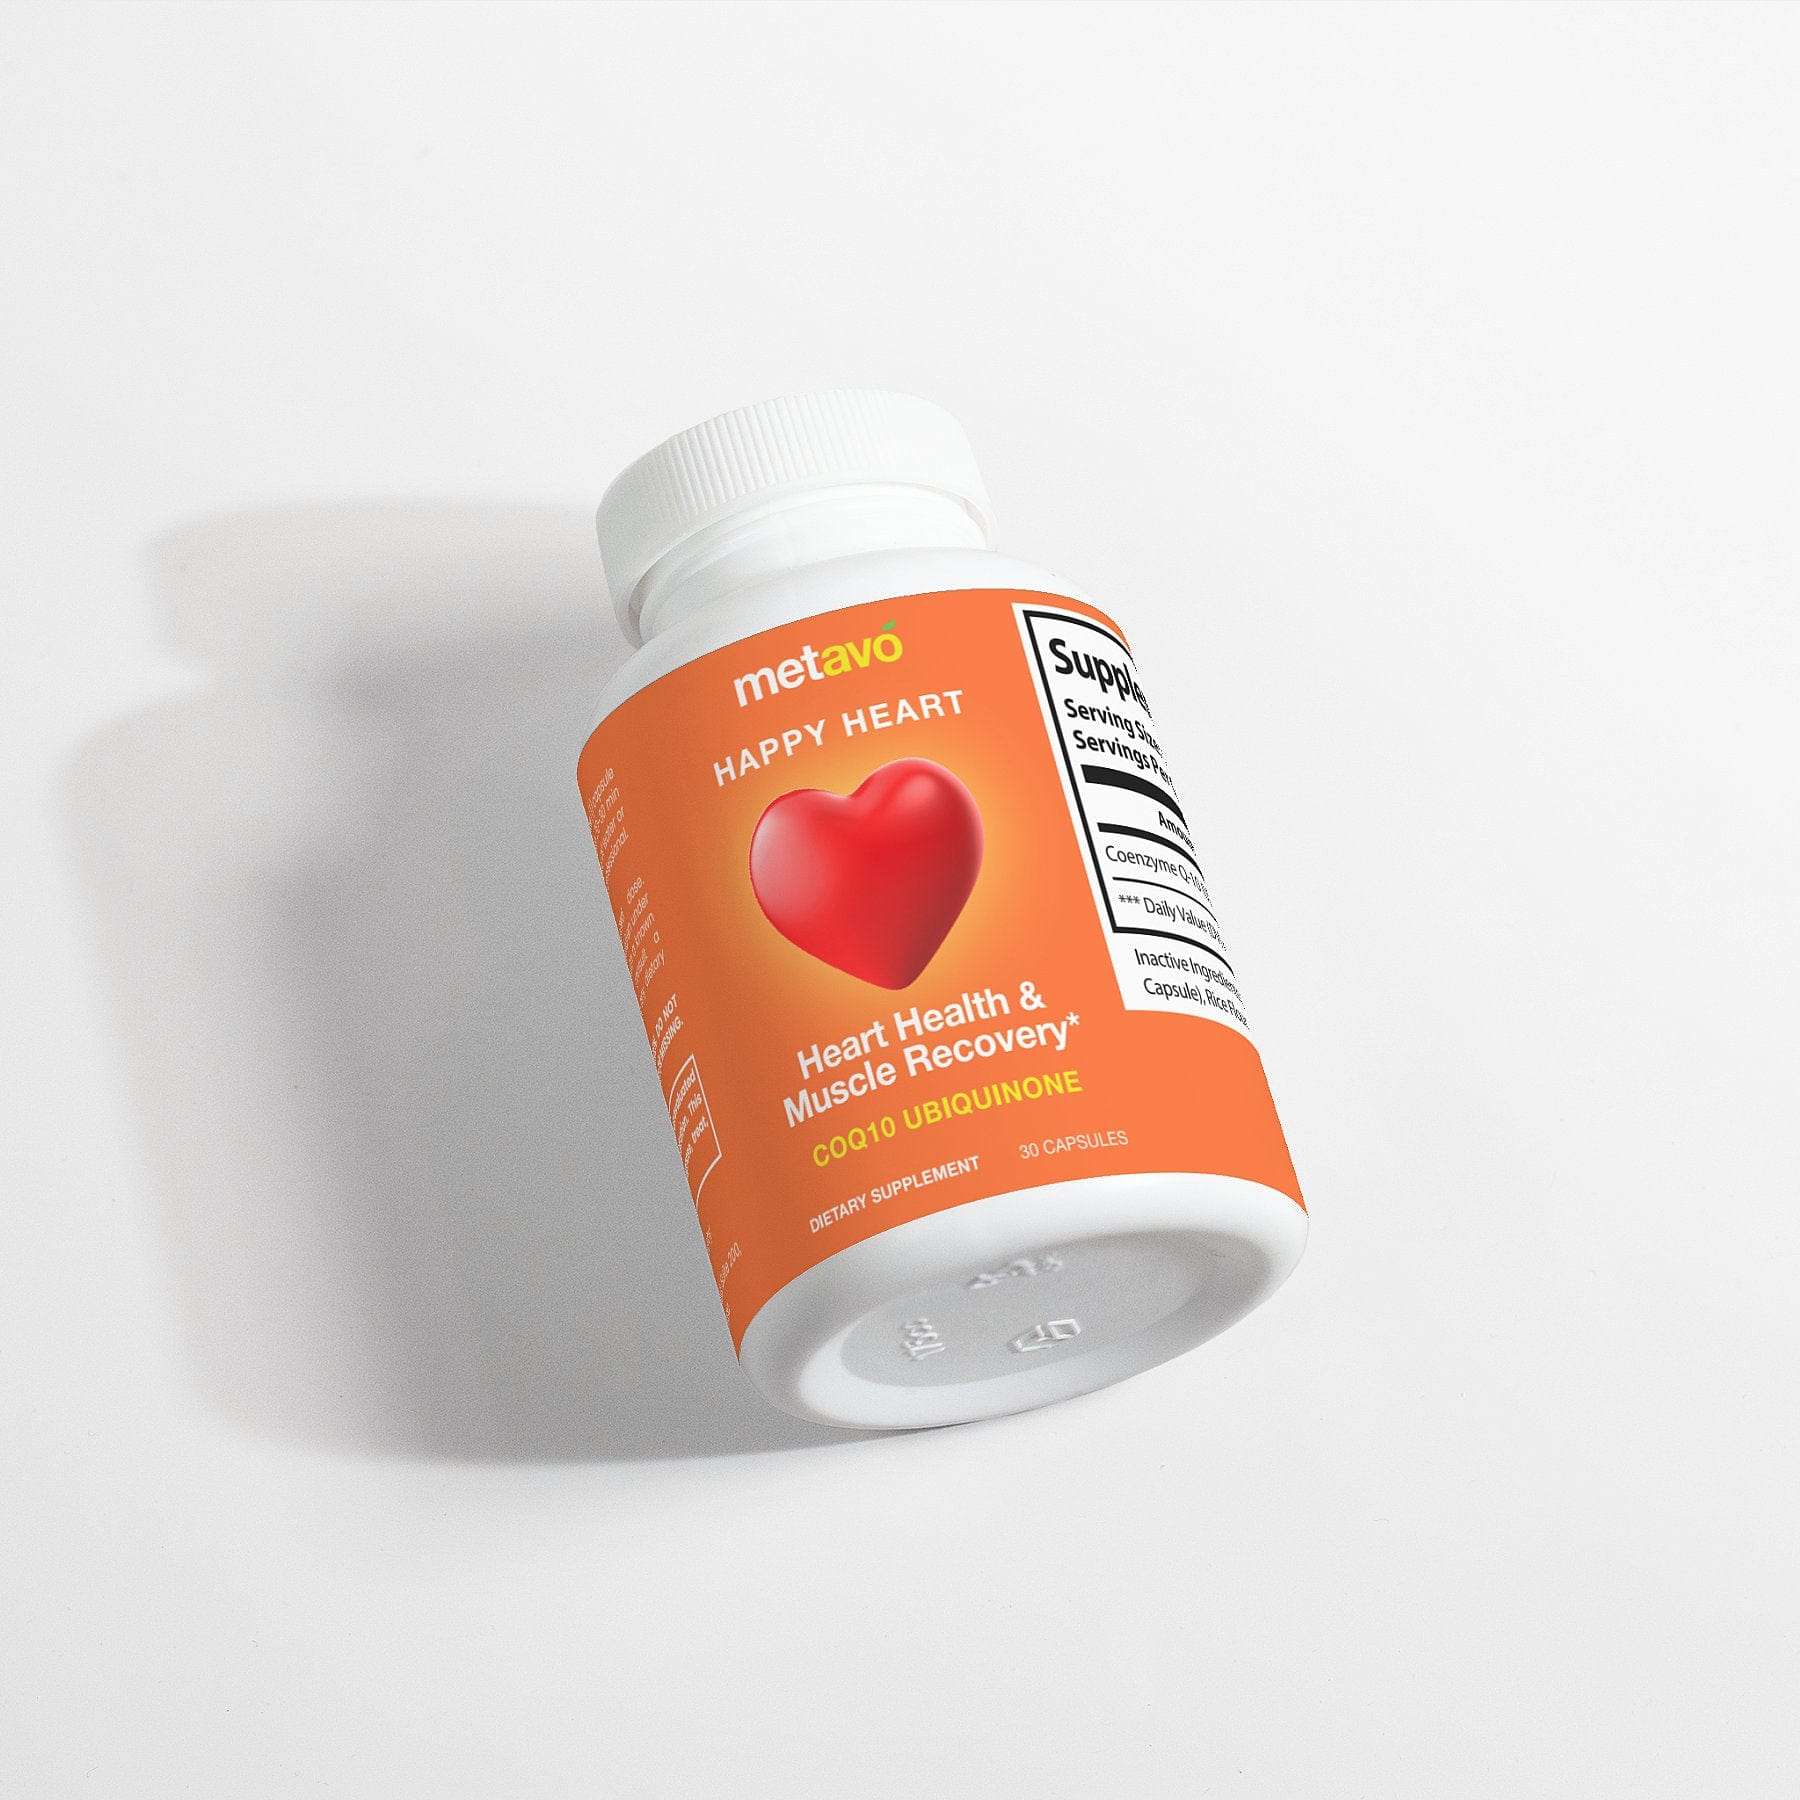 Metavo.com Specialty Supplements Happy Heart